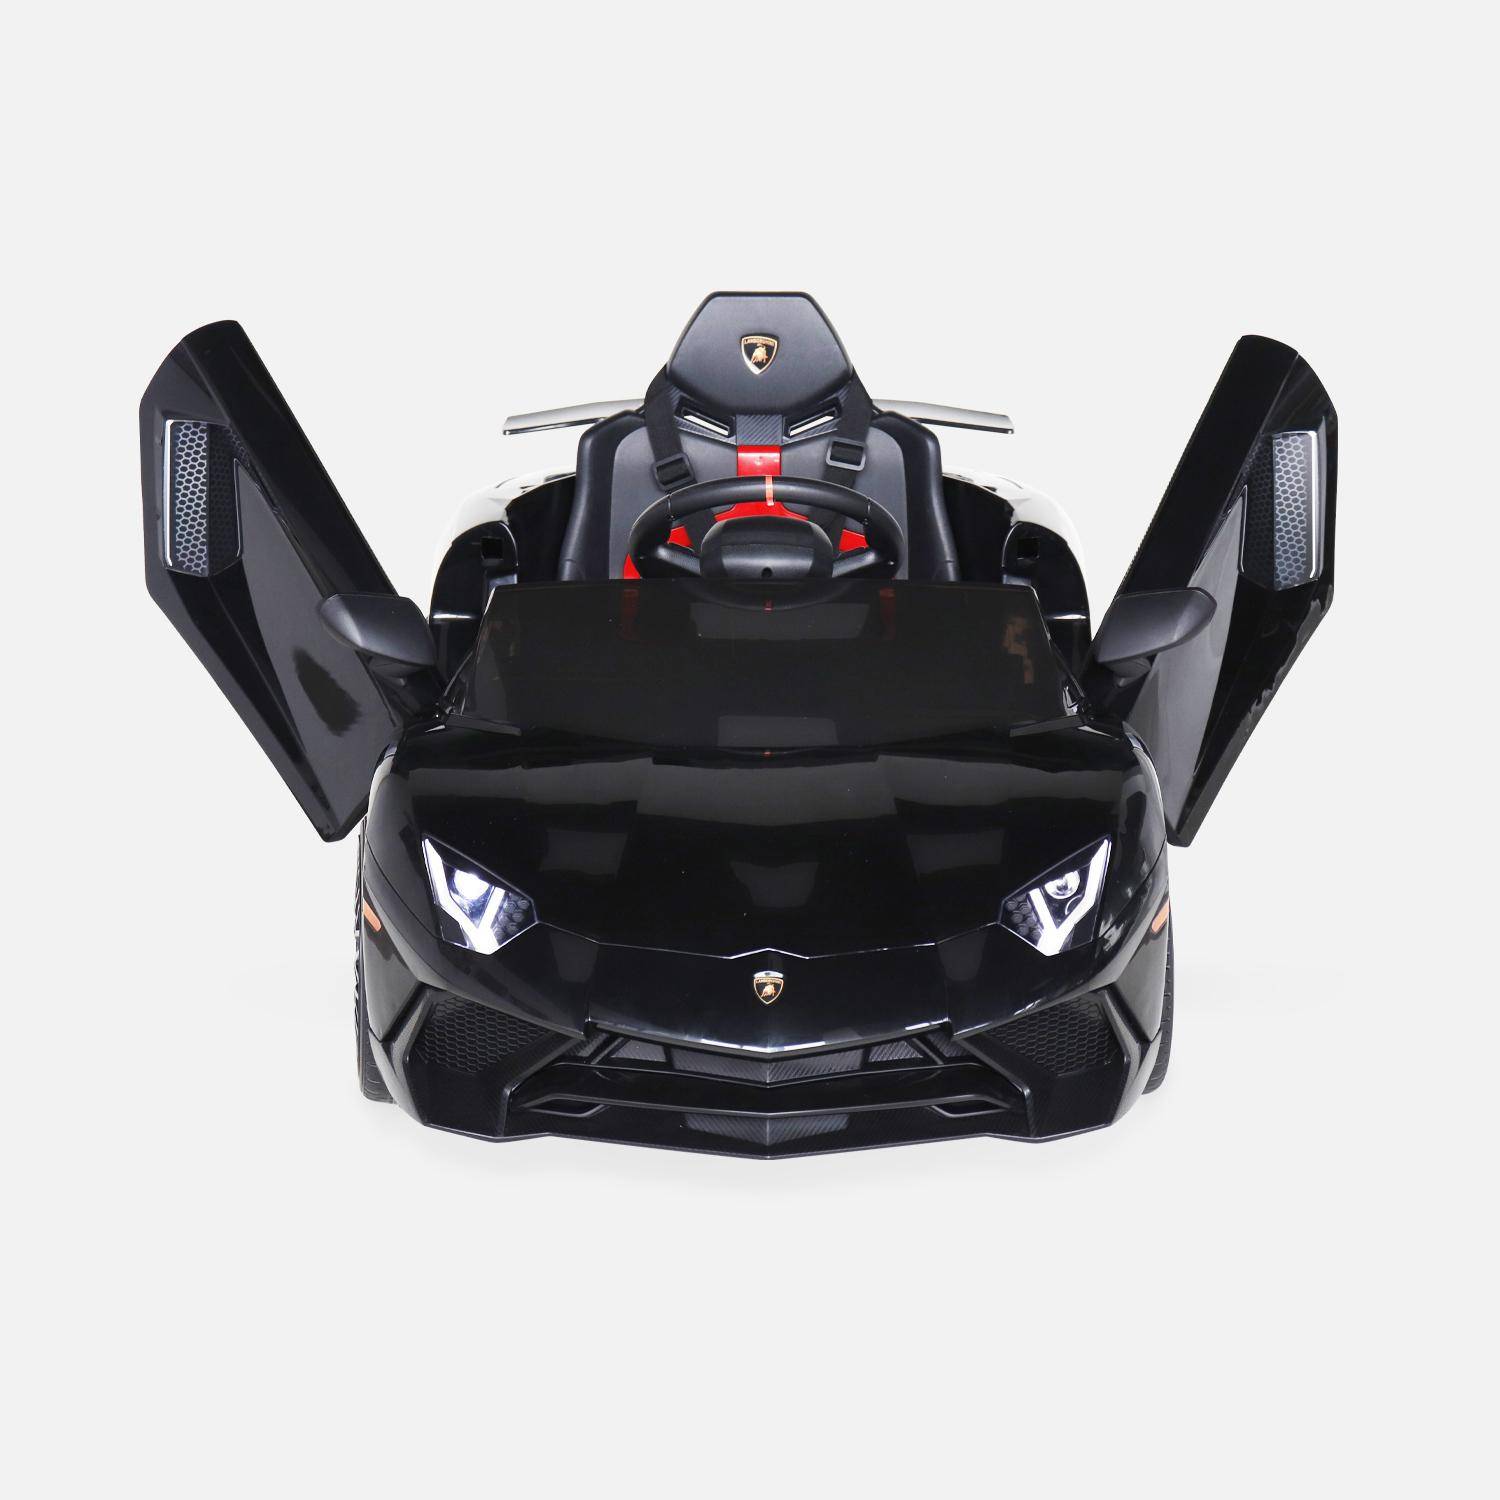 Voiture électrique 12V pour enfant Lamborghini, noir, 1 place, avec autoradio, télécommande, MP3, port USB et phares fonctionnels Photo6